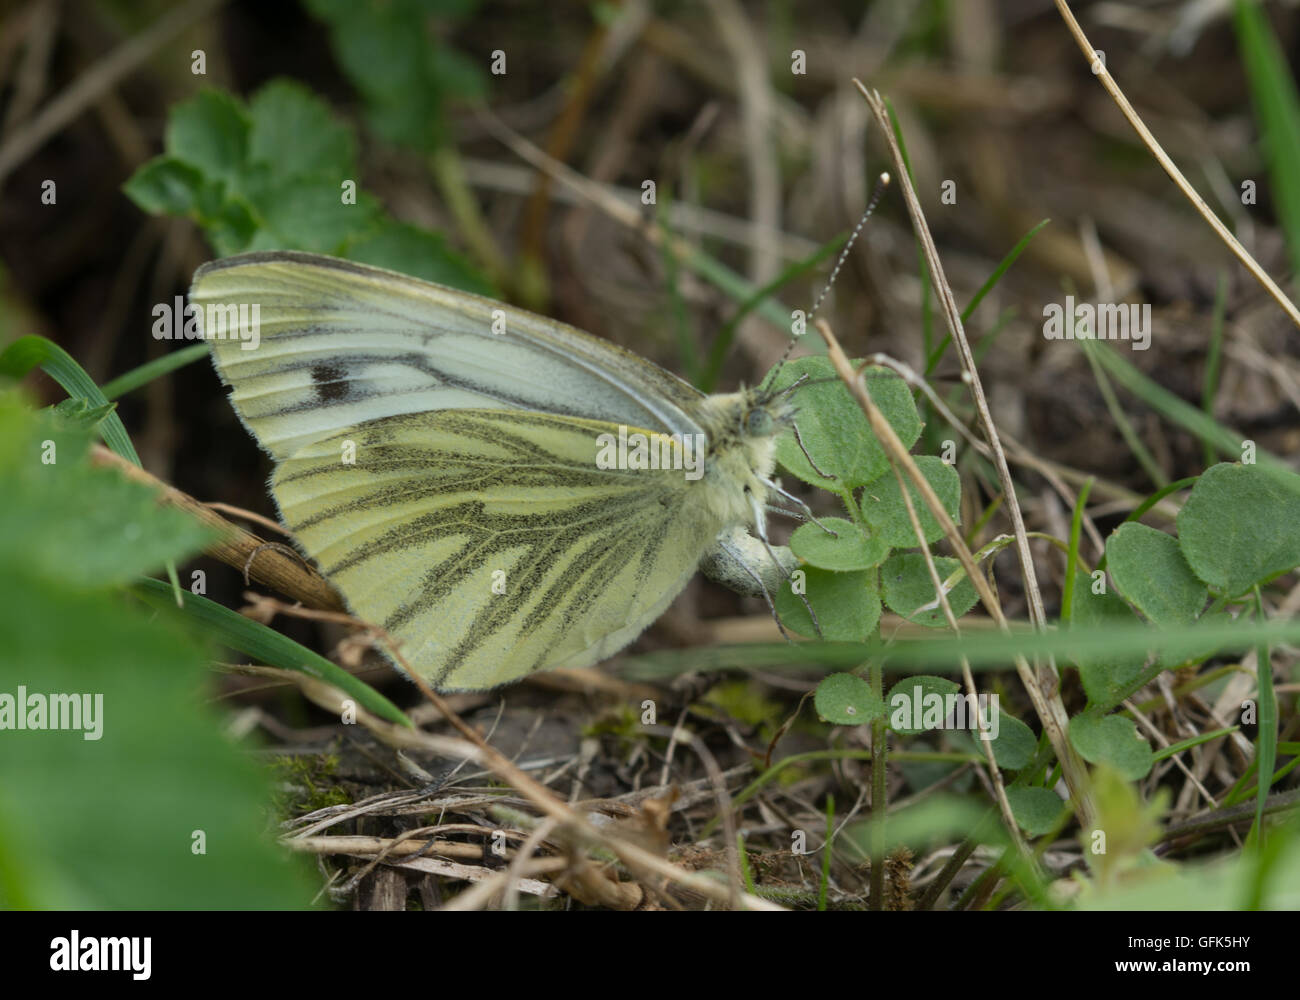 Farfalla bianca a venature verdi (Pieris napi) ovaiata su foglie verdi nell'habitat erboso dell'Hampshire, Inghilterra, Regno Unito Foto Stock